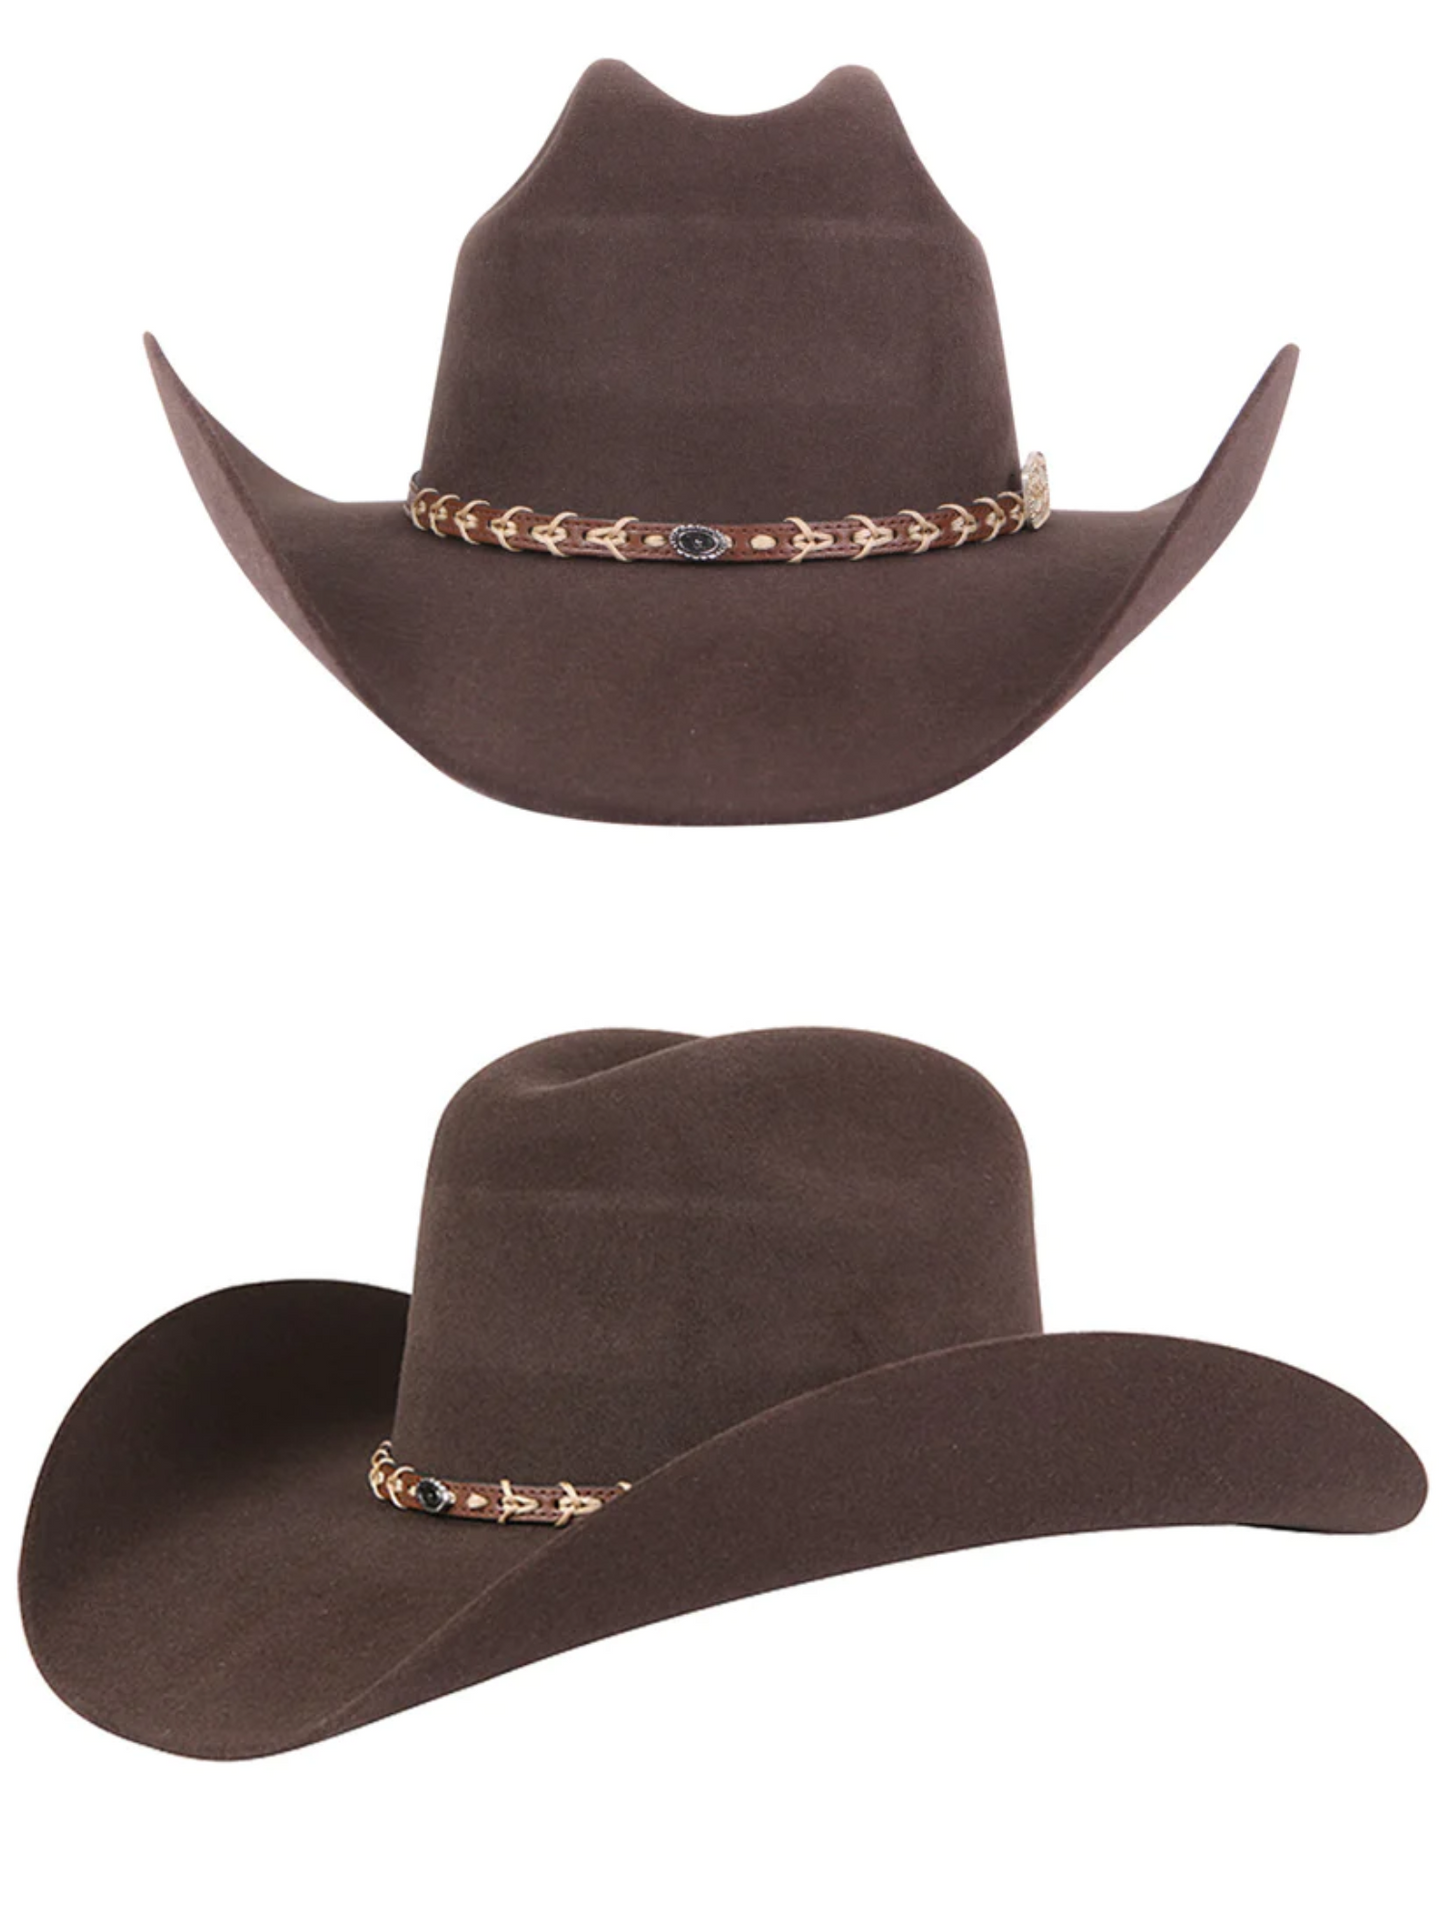 Texana Horma Rebeka 50X Lana para Hombre 'El Señor de los Cielos' - ID: 41676 Cowboy Hat El Señor de los Cielos 